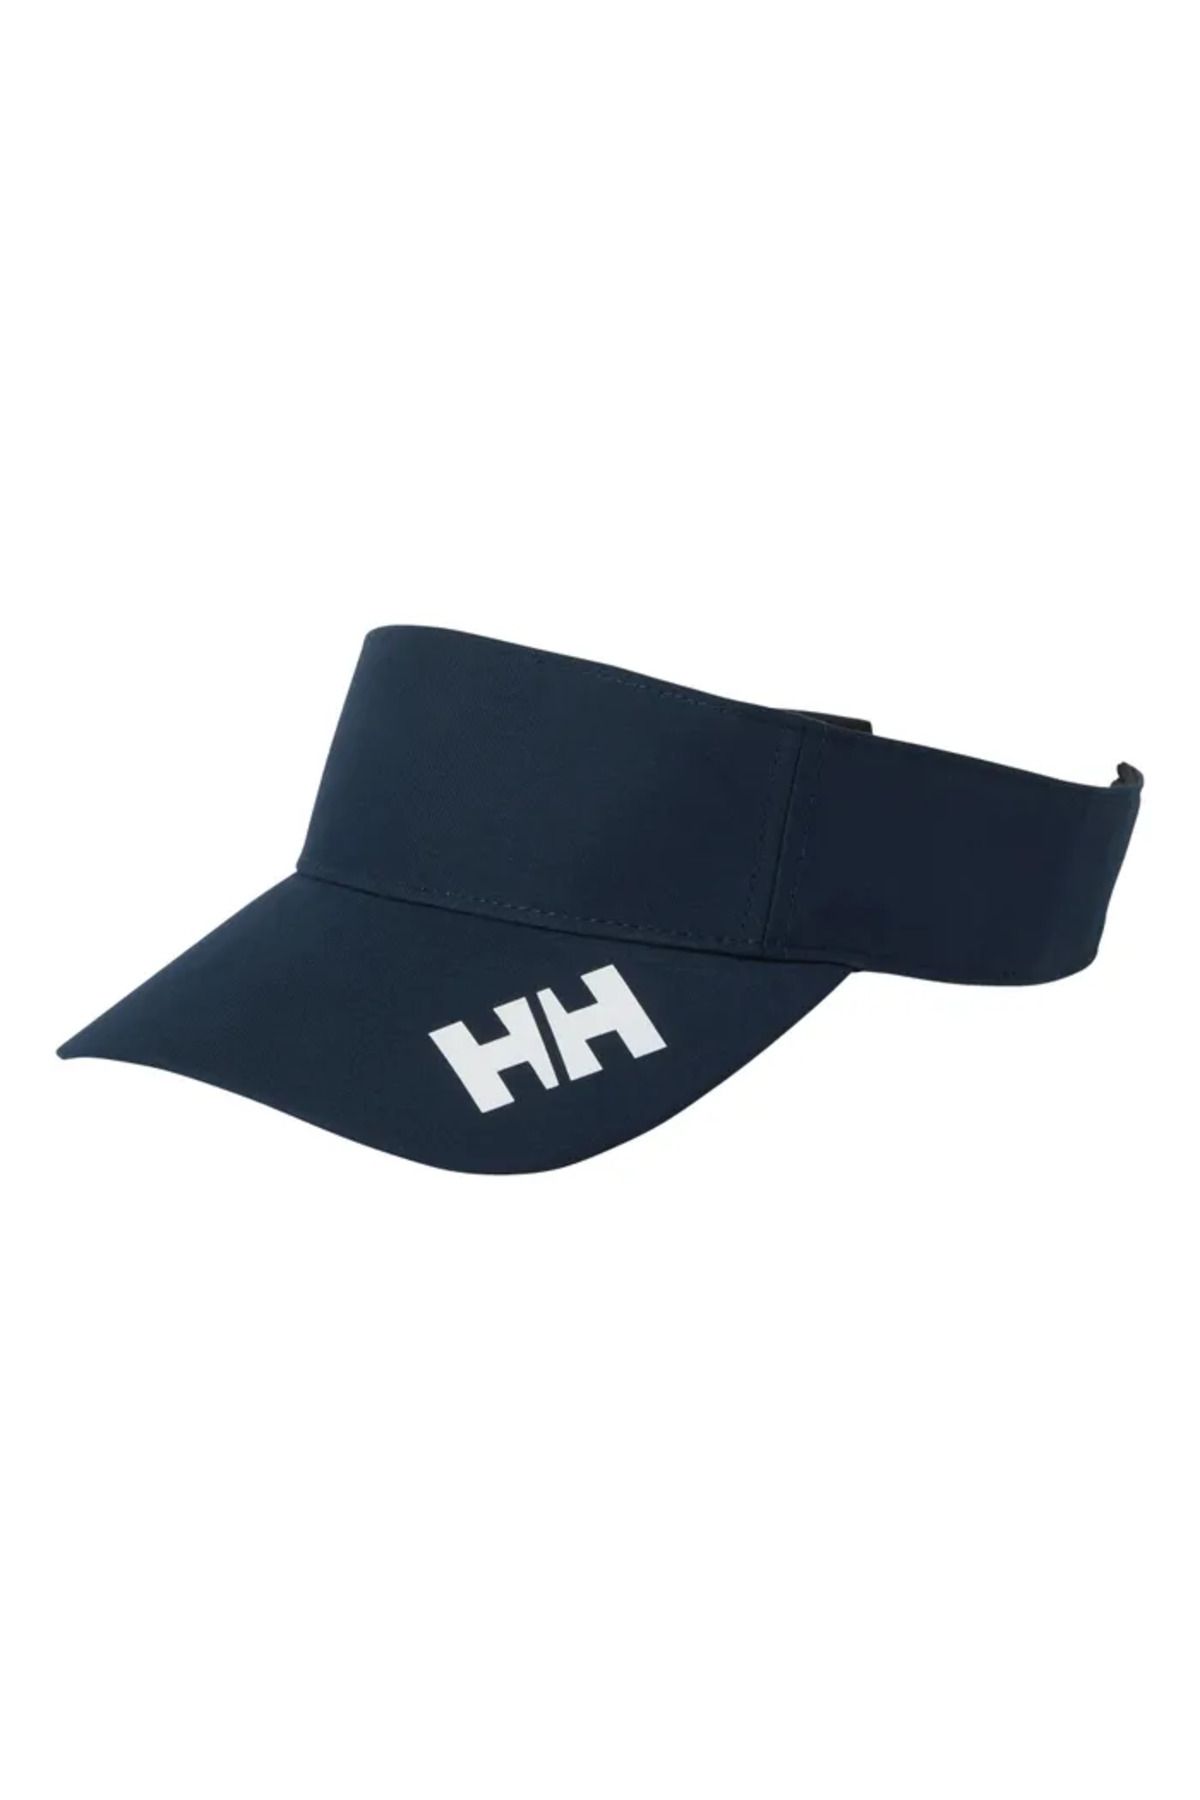 Helly Hansen Helly Hansen Crew Vısor 2.0 Şapka Unısex Lacivert Şapka Hha.67545-hha.597